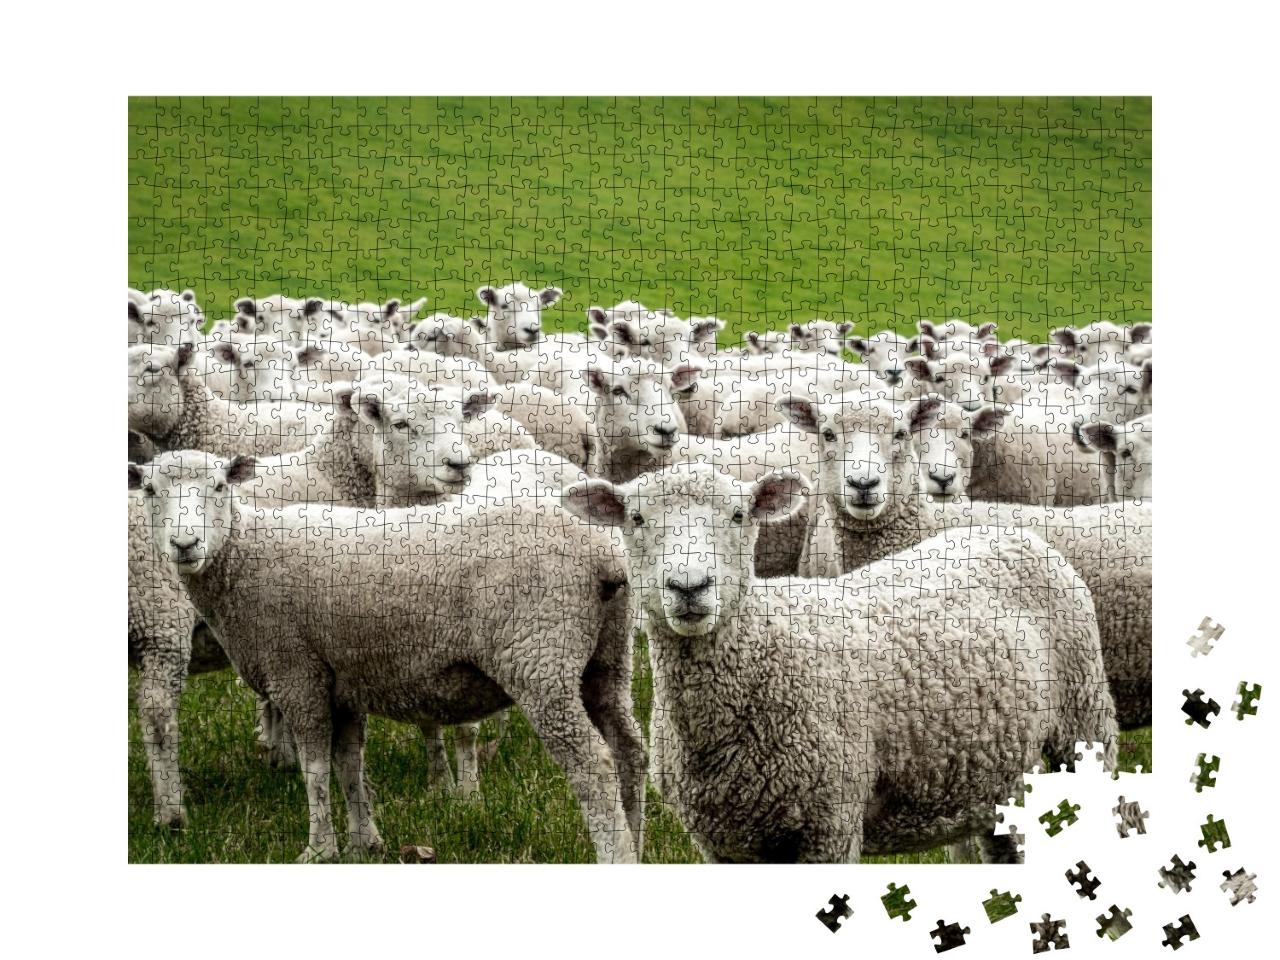 Puzzle de 1000 pièces « Troupeau de moutons »